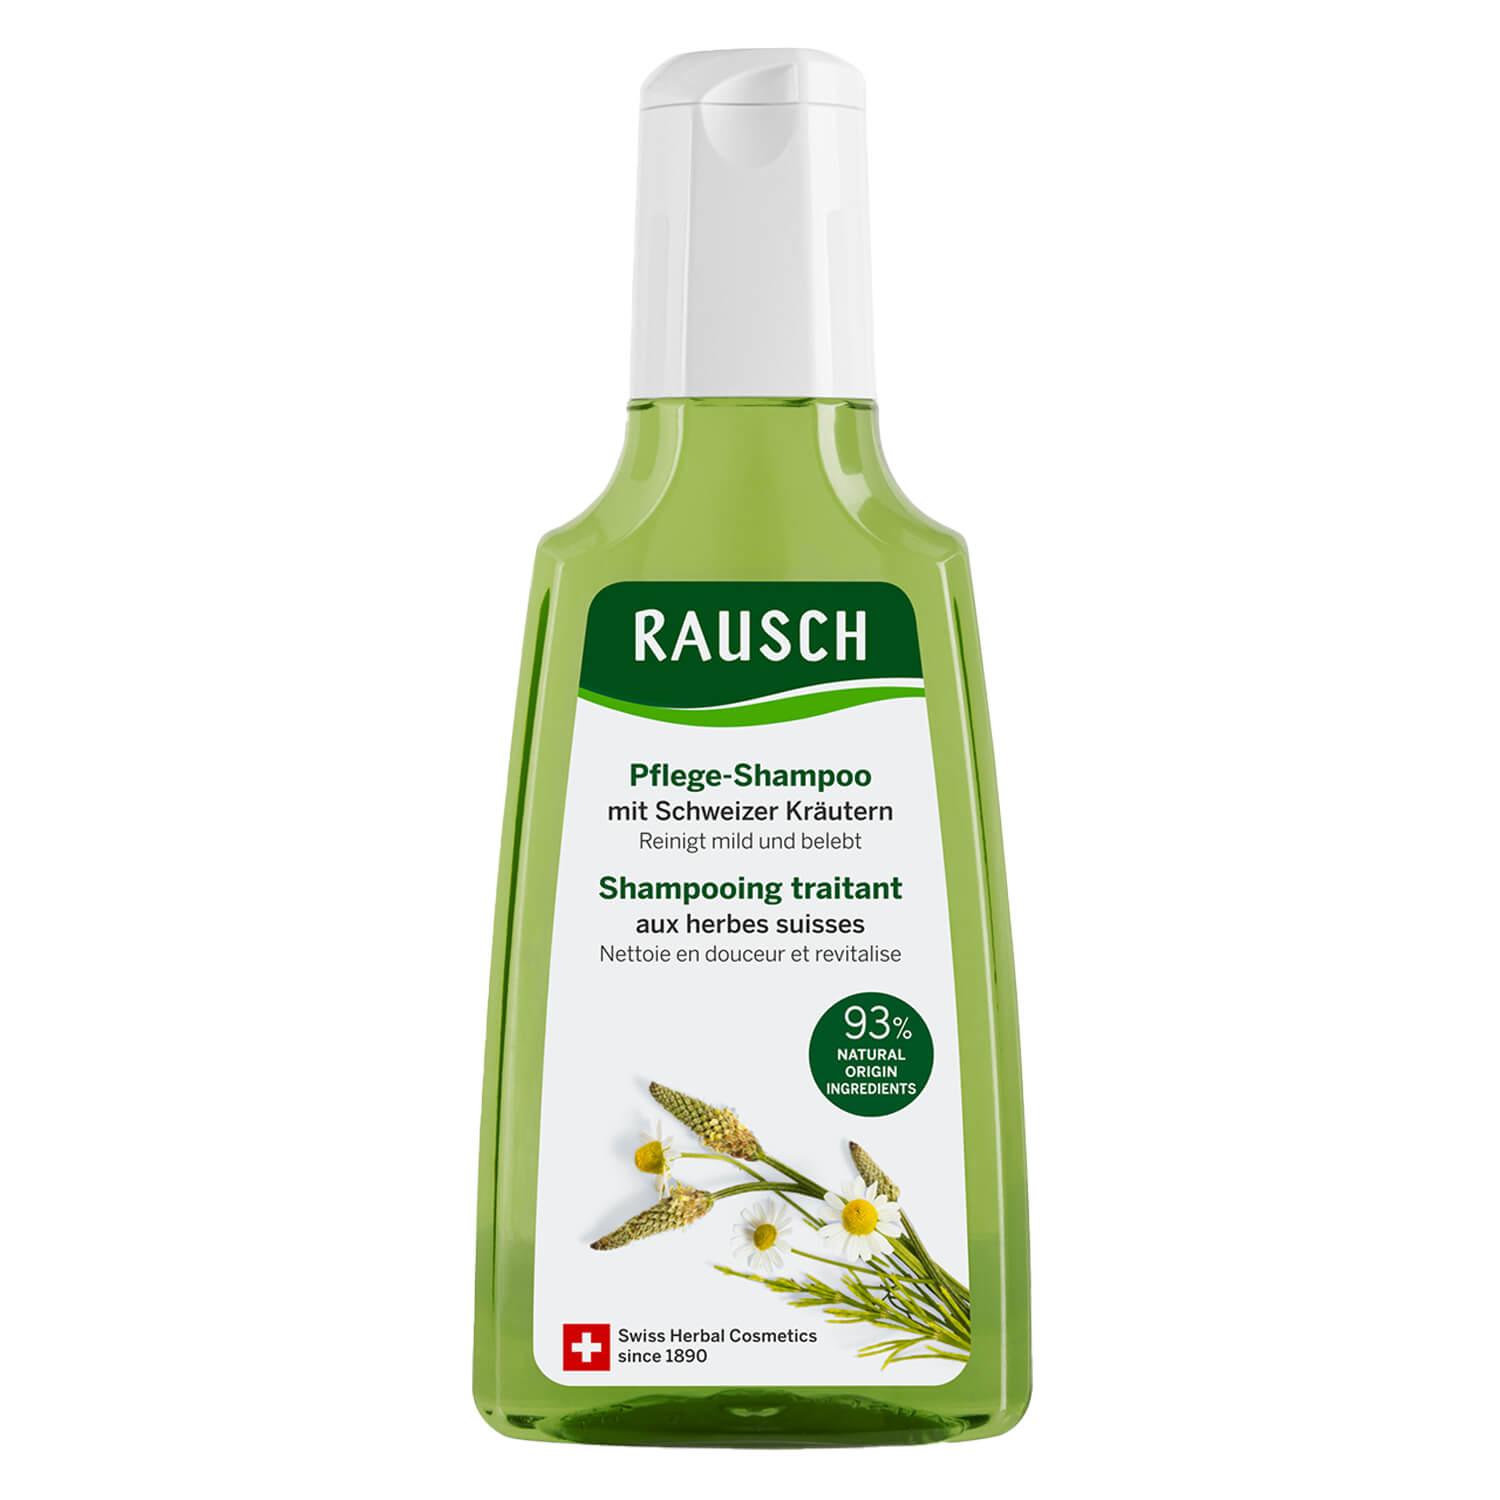 Schweizer Kräuter - Pflege-Shampoo